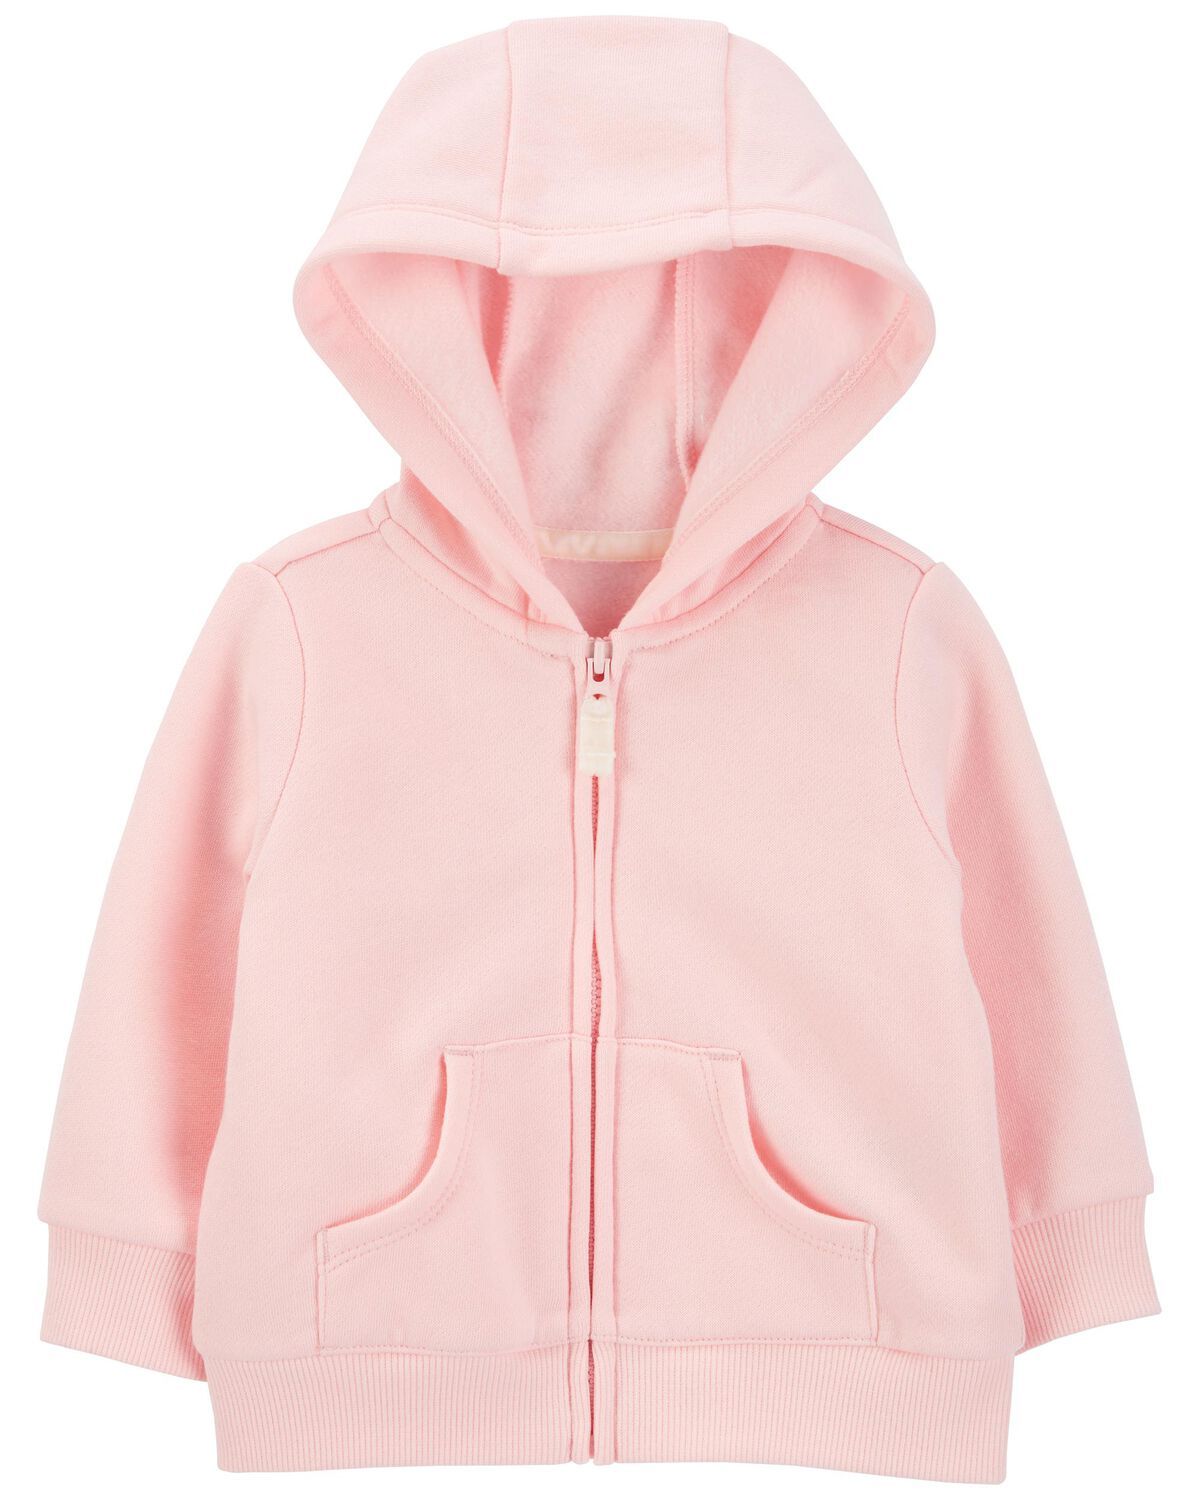 Pink Baby Zip-Up Fleece Hoodie | carters.com | Carter's